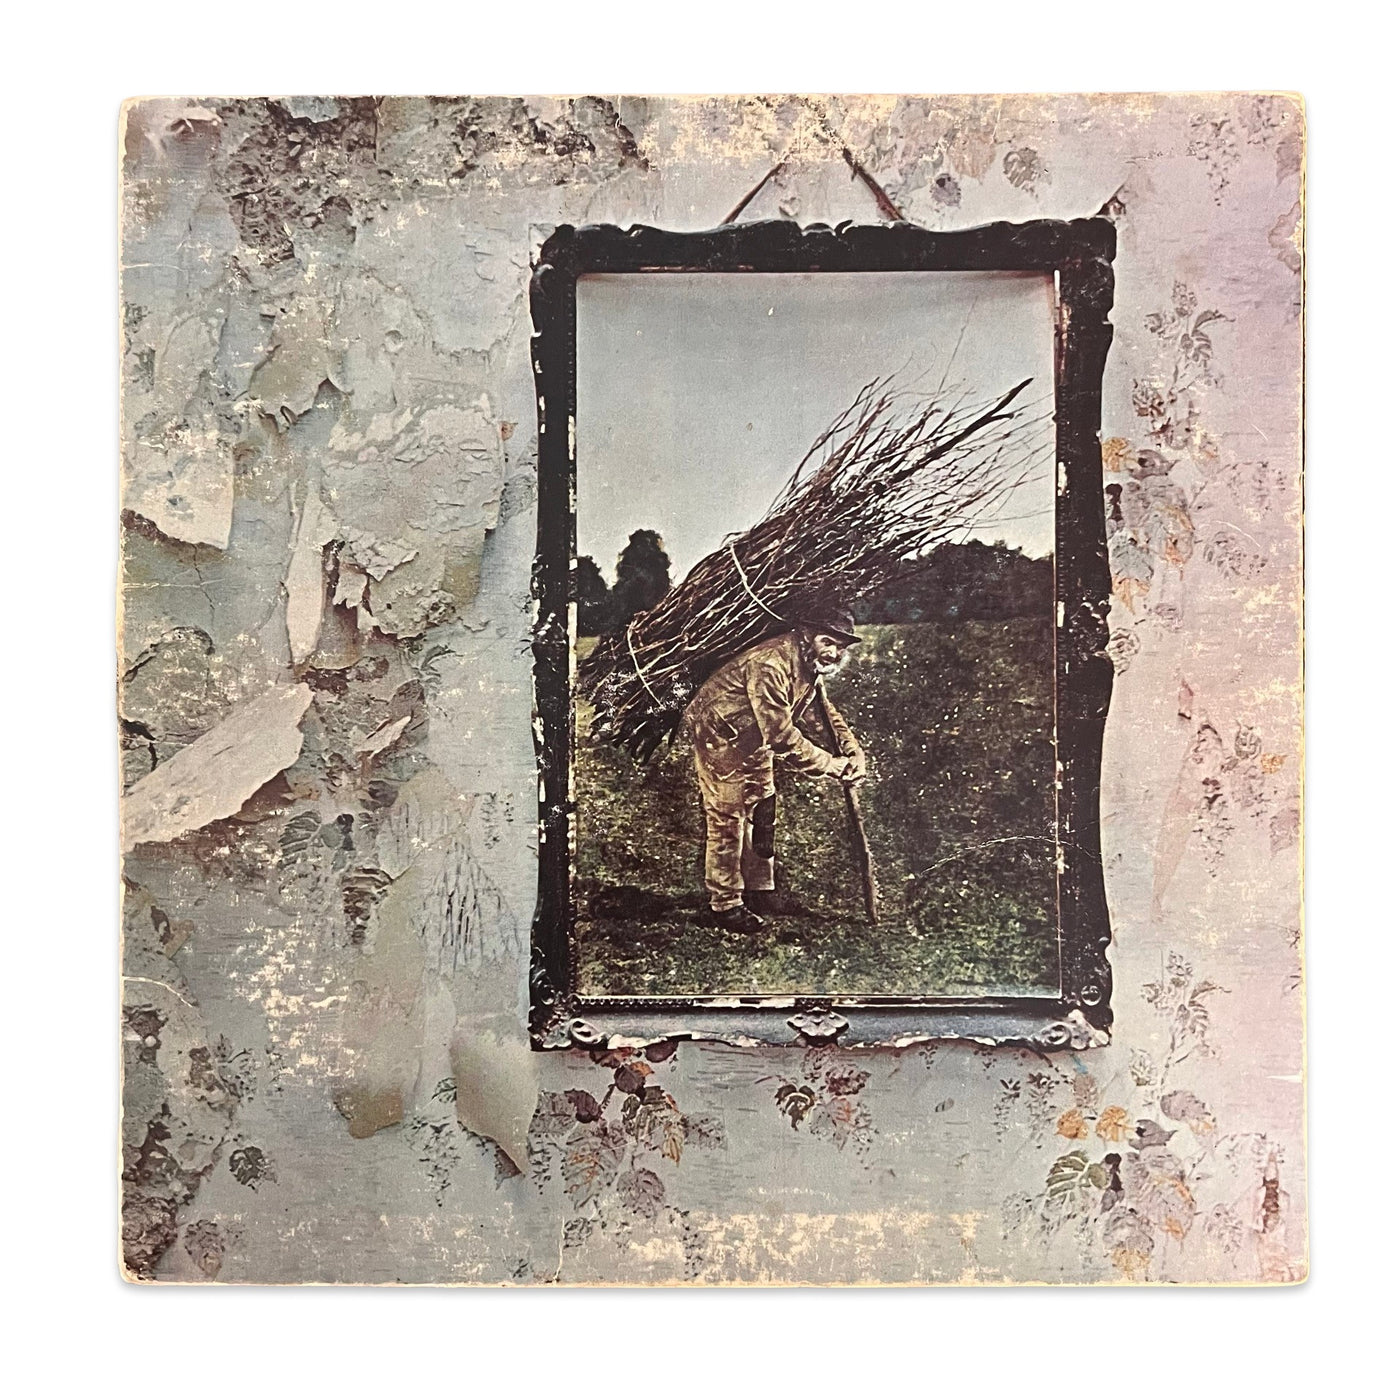 Led Zeppelin – Untitled - 1974 Reissue